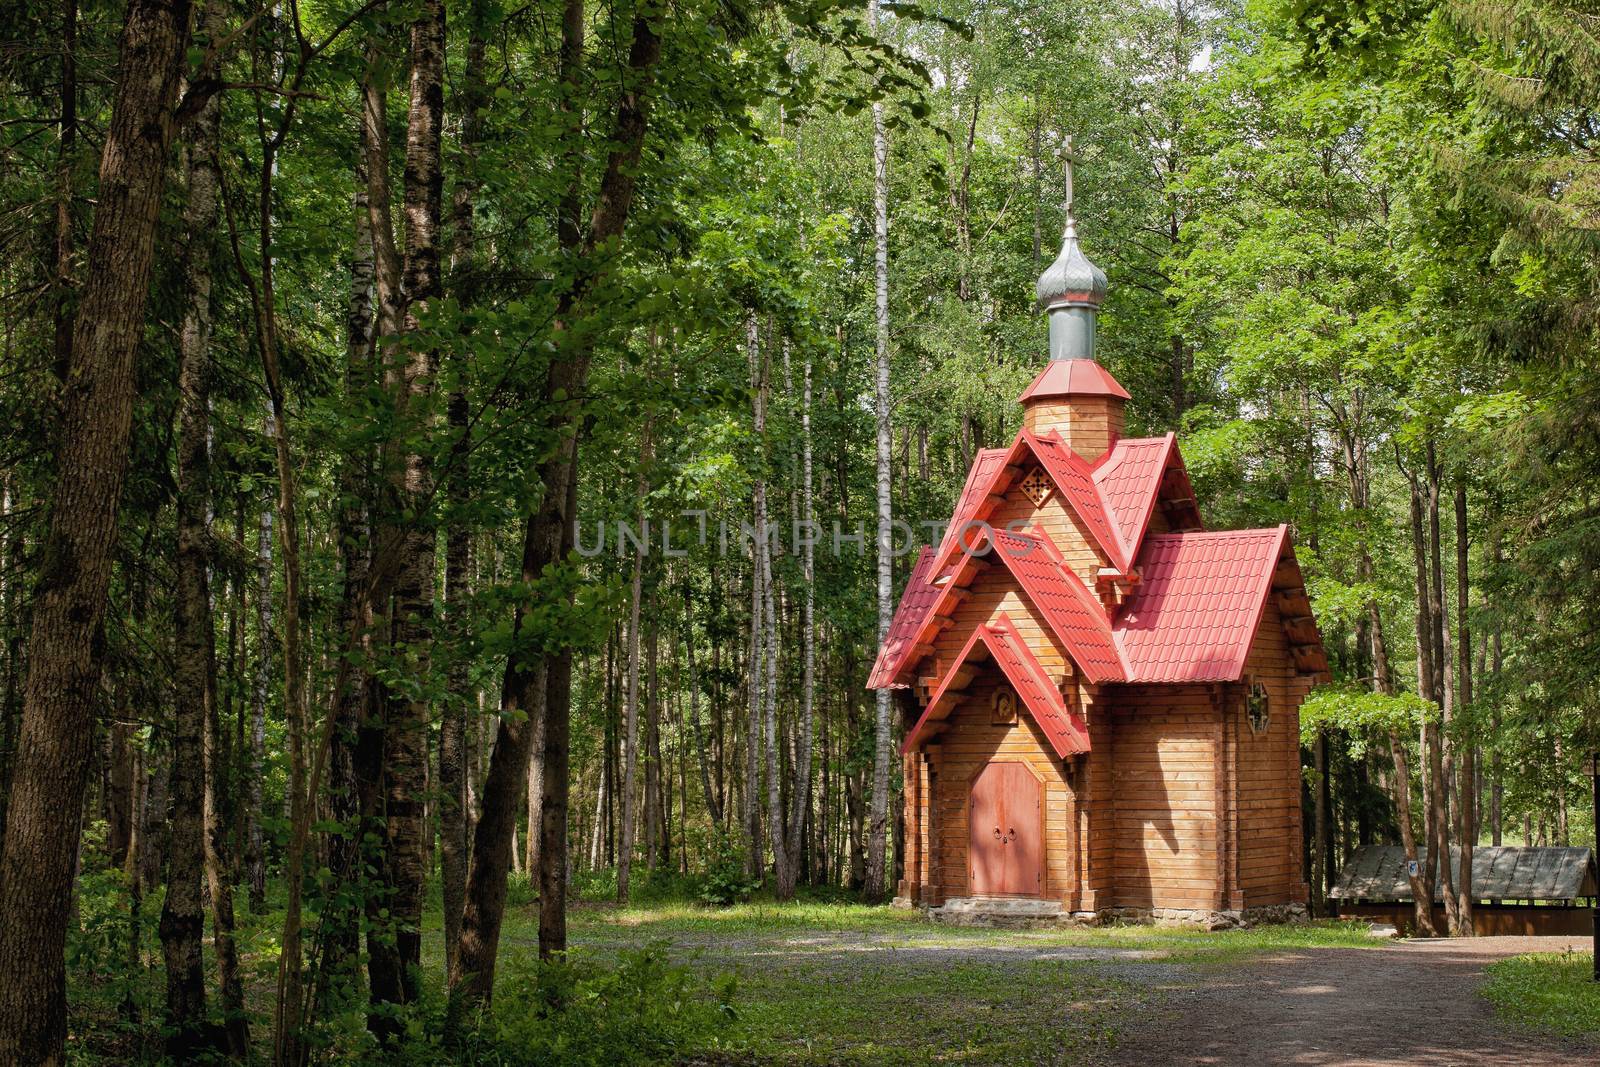 Wooden chapel in the wood in the Smolensk region Russia